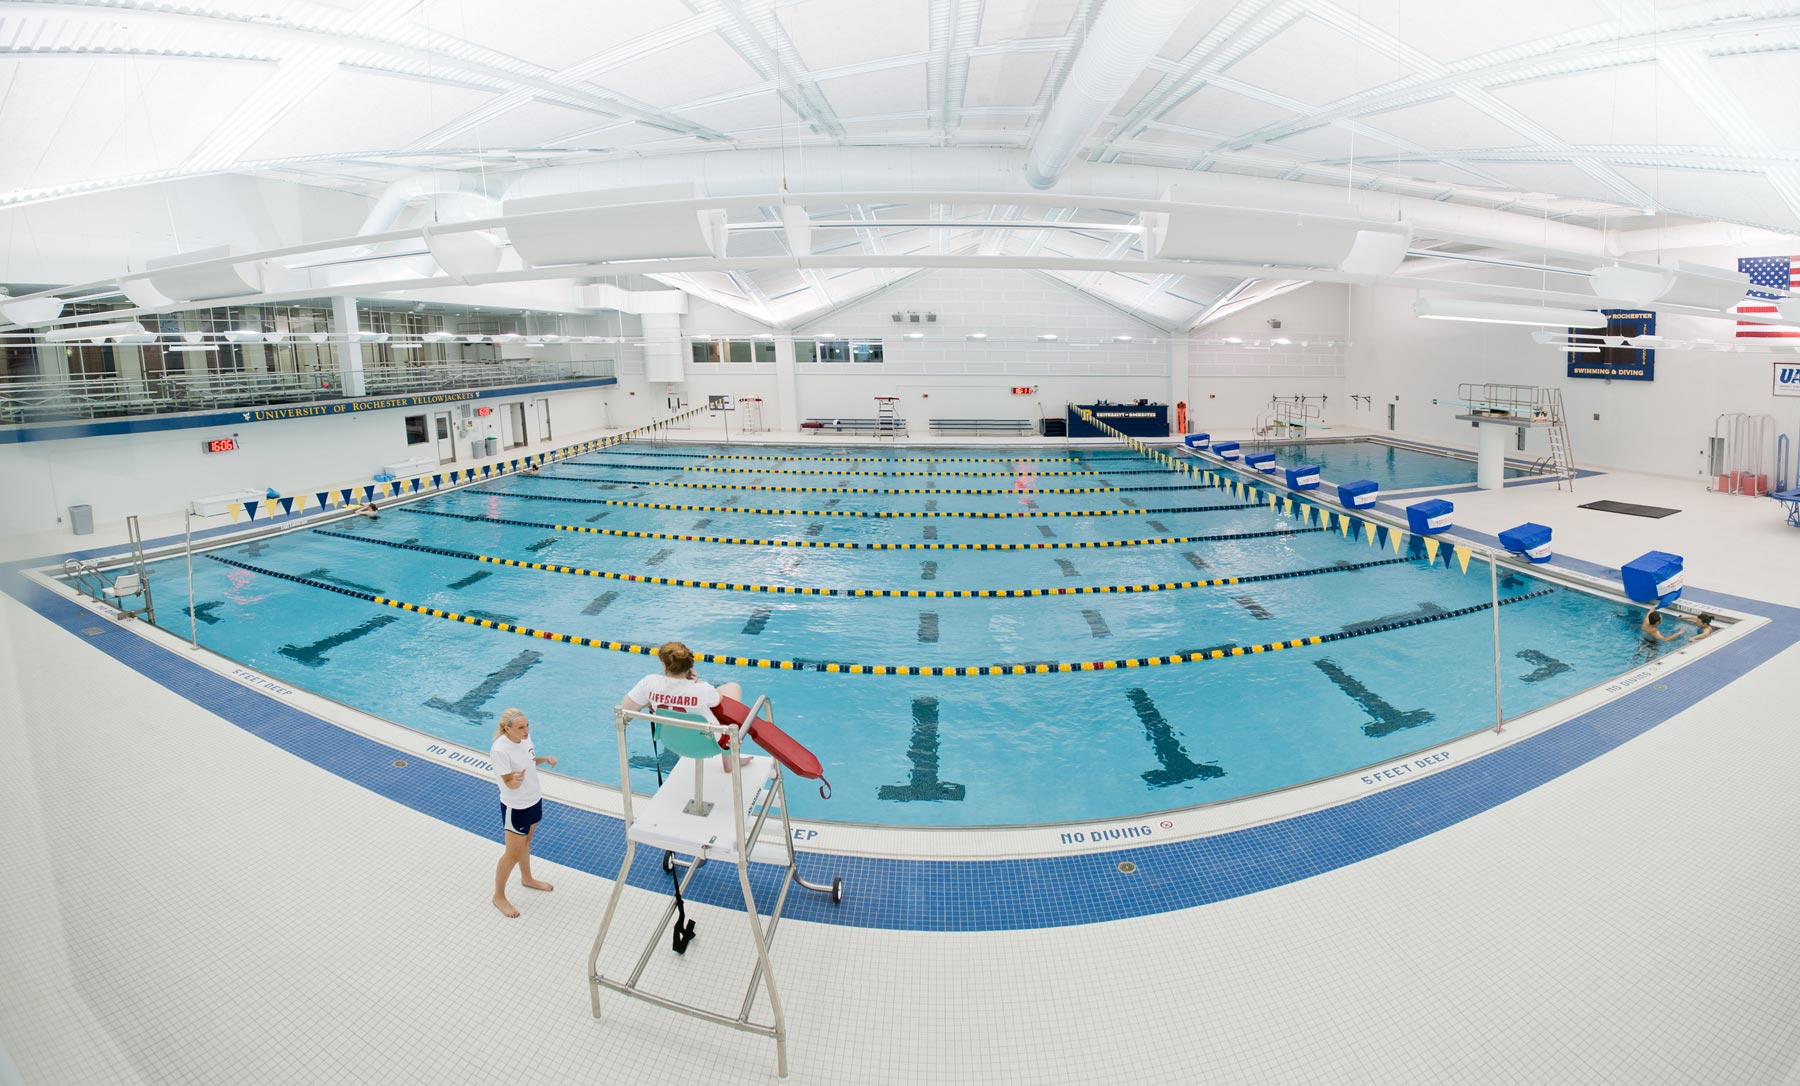 Aquatic center pool